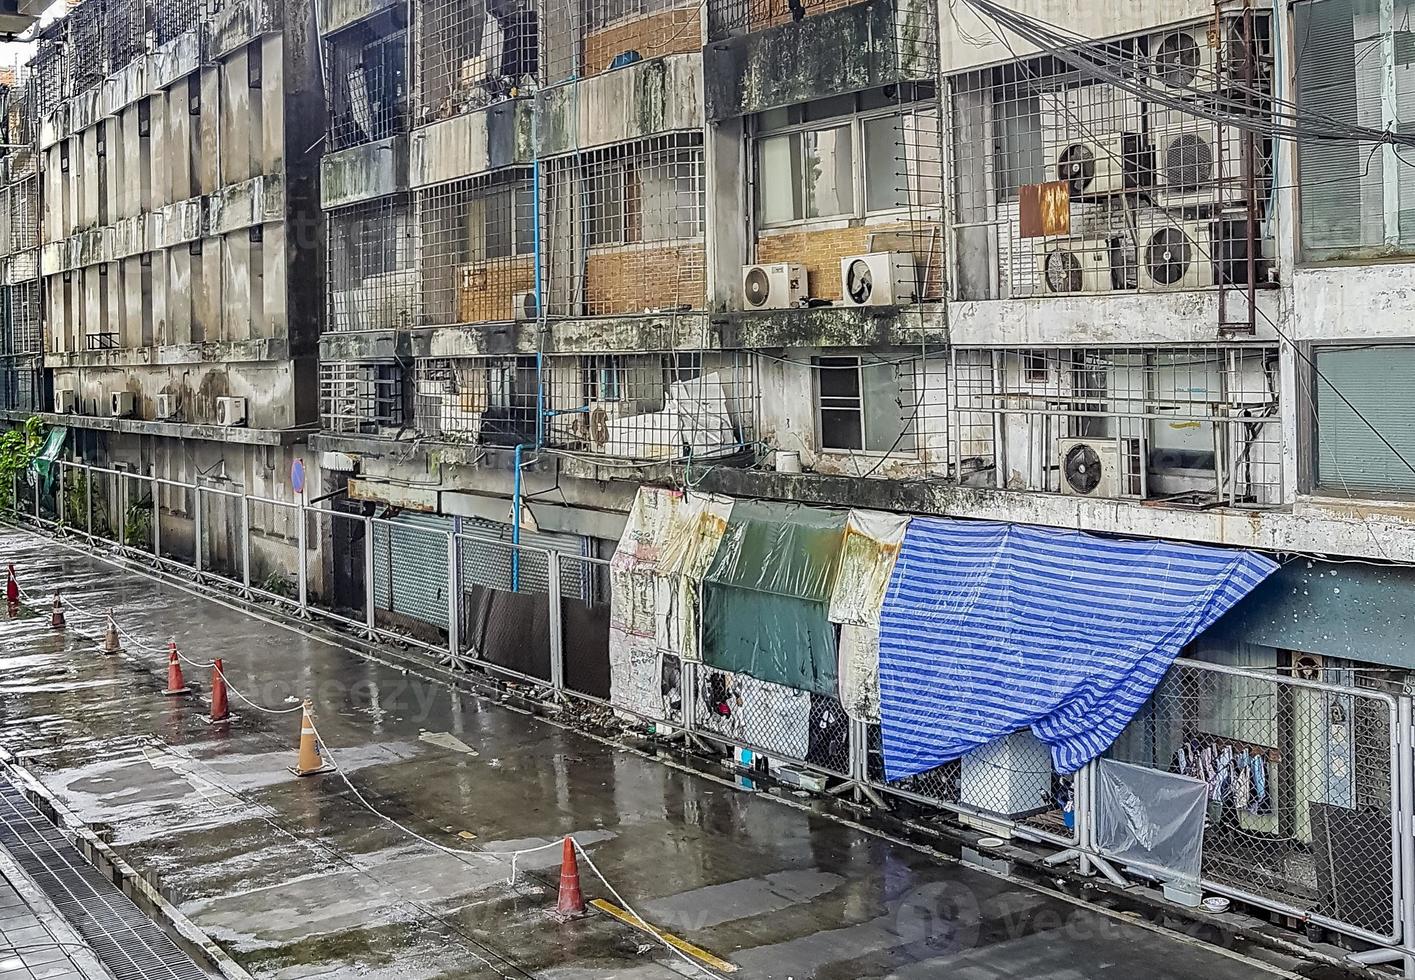 inesthétiques délabrées dans les vieux quartiers pauvres et sales de bangkok en thaïlande. photo